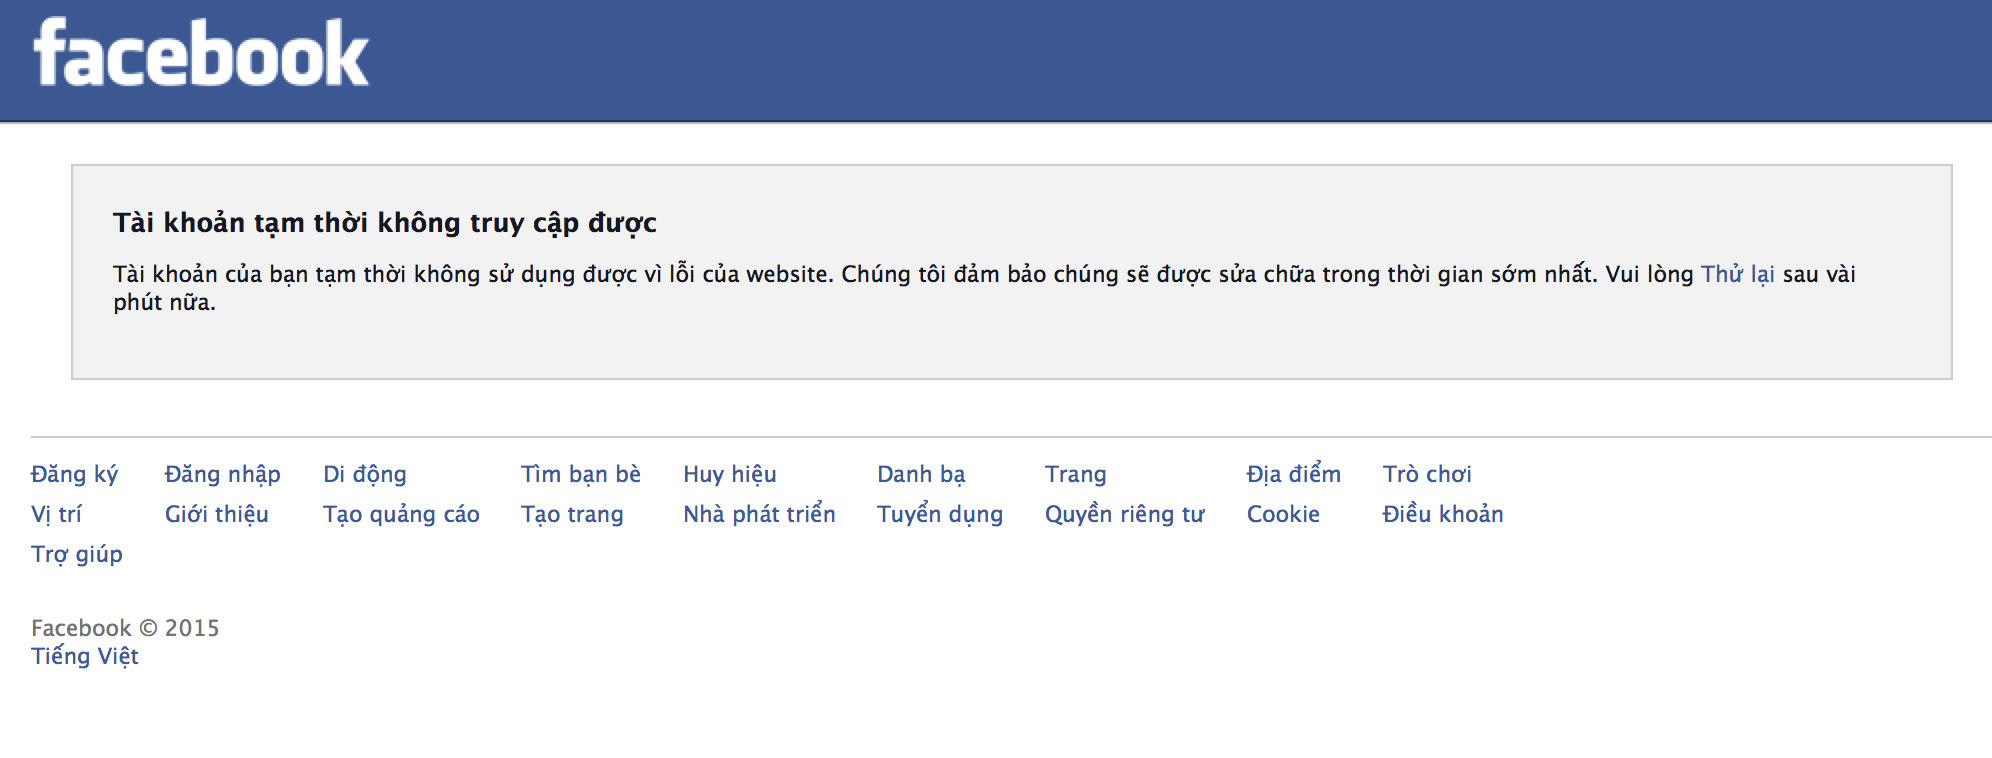 Facebook bị lỗi không truy cập được trên phạm vi cả nước lúc 13h ngày 27/01